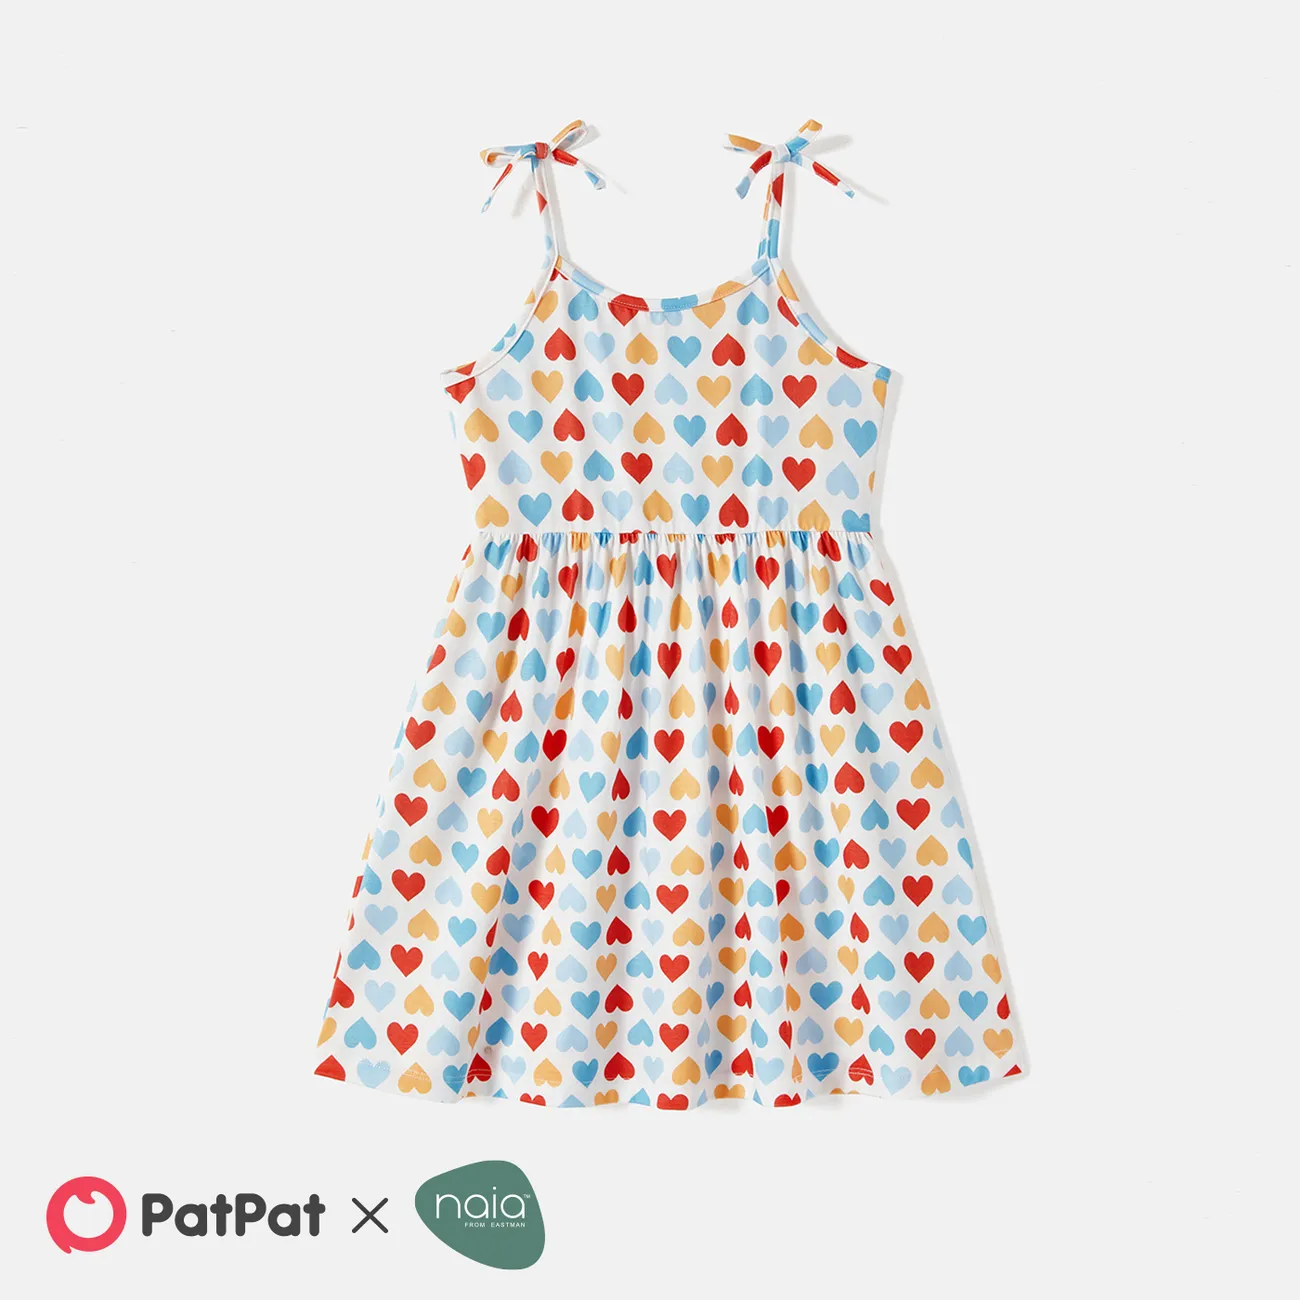 kleinkind/kind mädchen naia™ buntes trägerkleid mit herzdruck und bowknot-design weiß big image 1